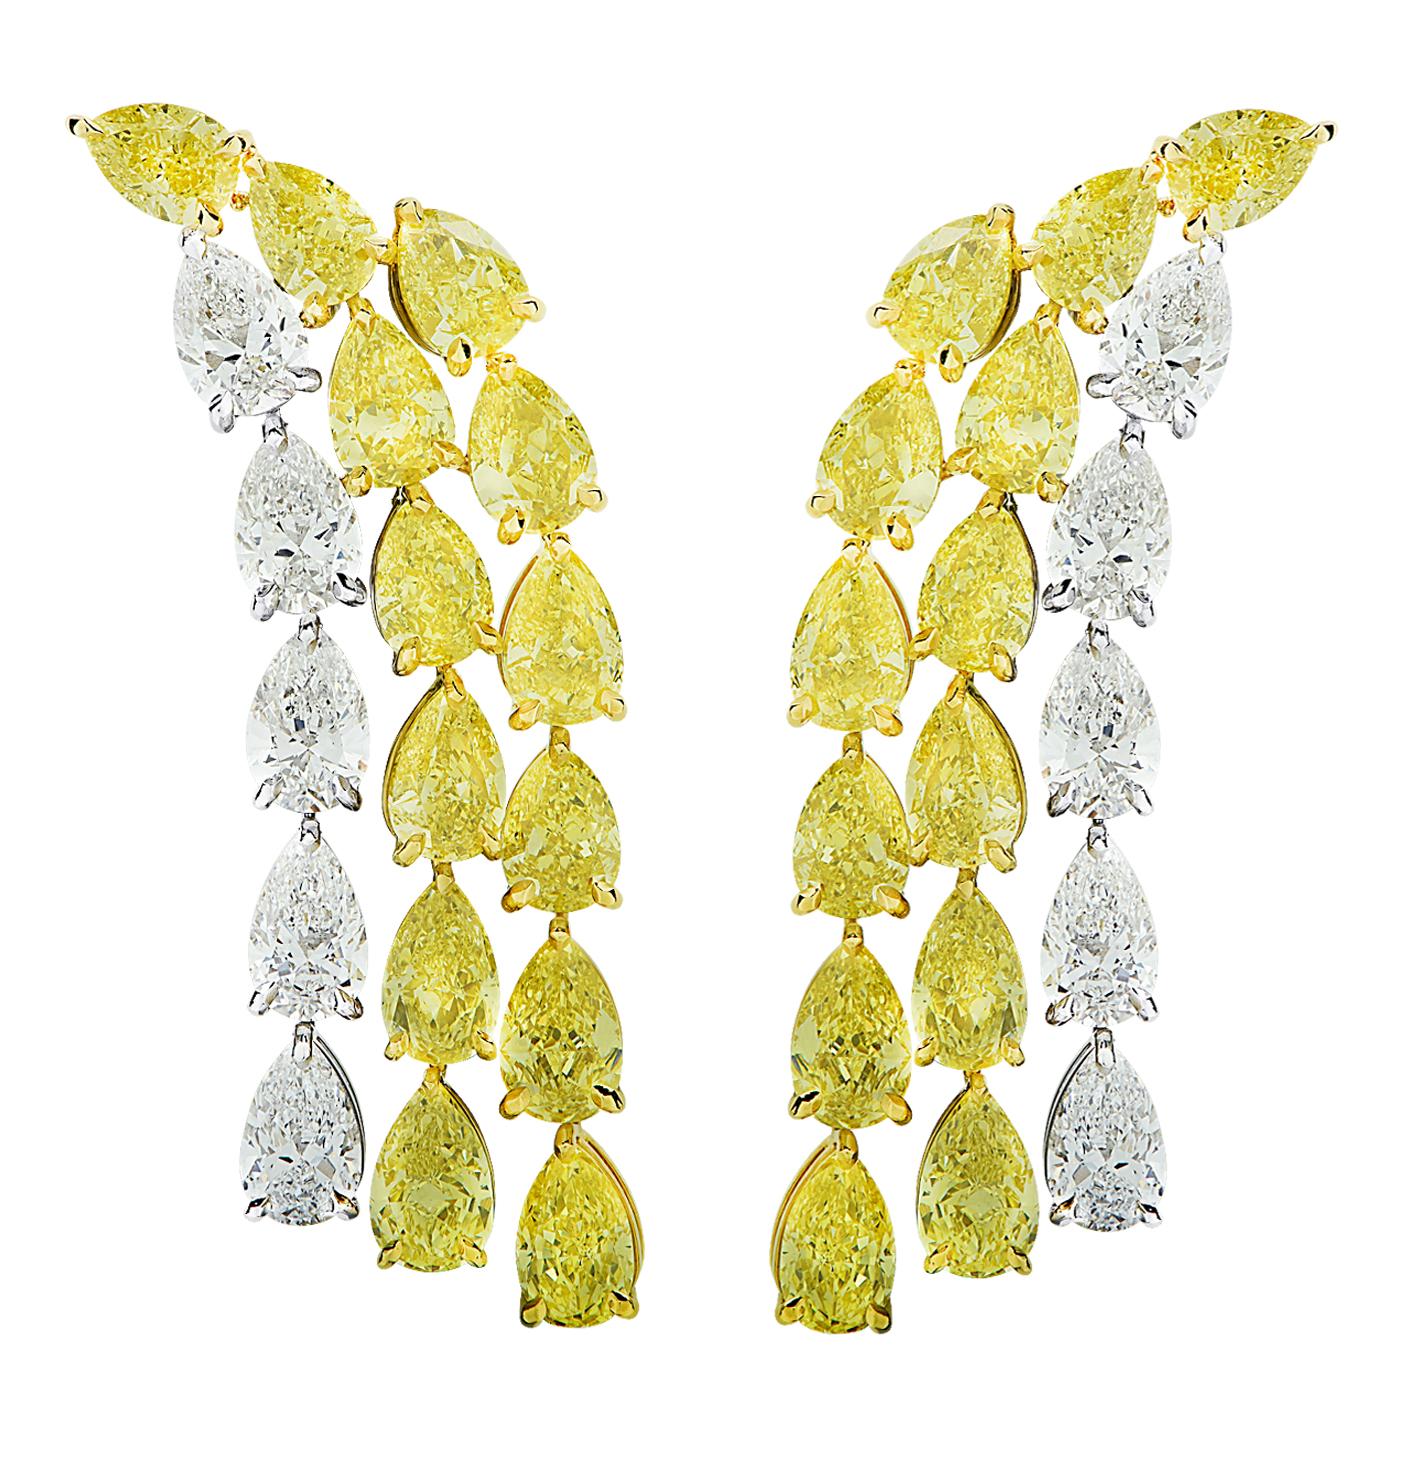 Taille poire Vivid Diamonds - Diamant jaune intense en forme de poire de 19,64 carats certifié par le GIA en vente